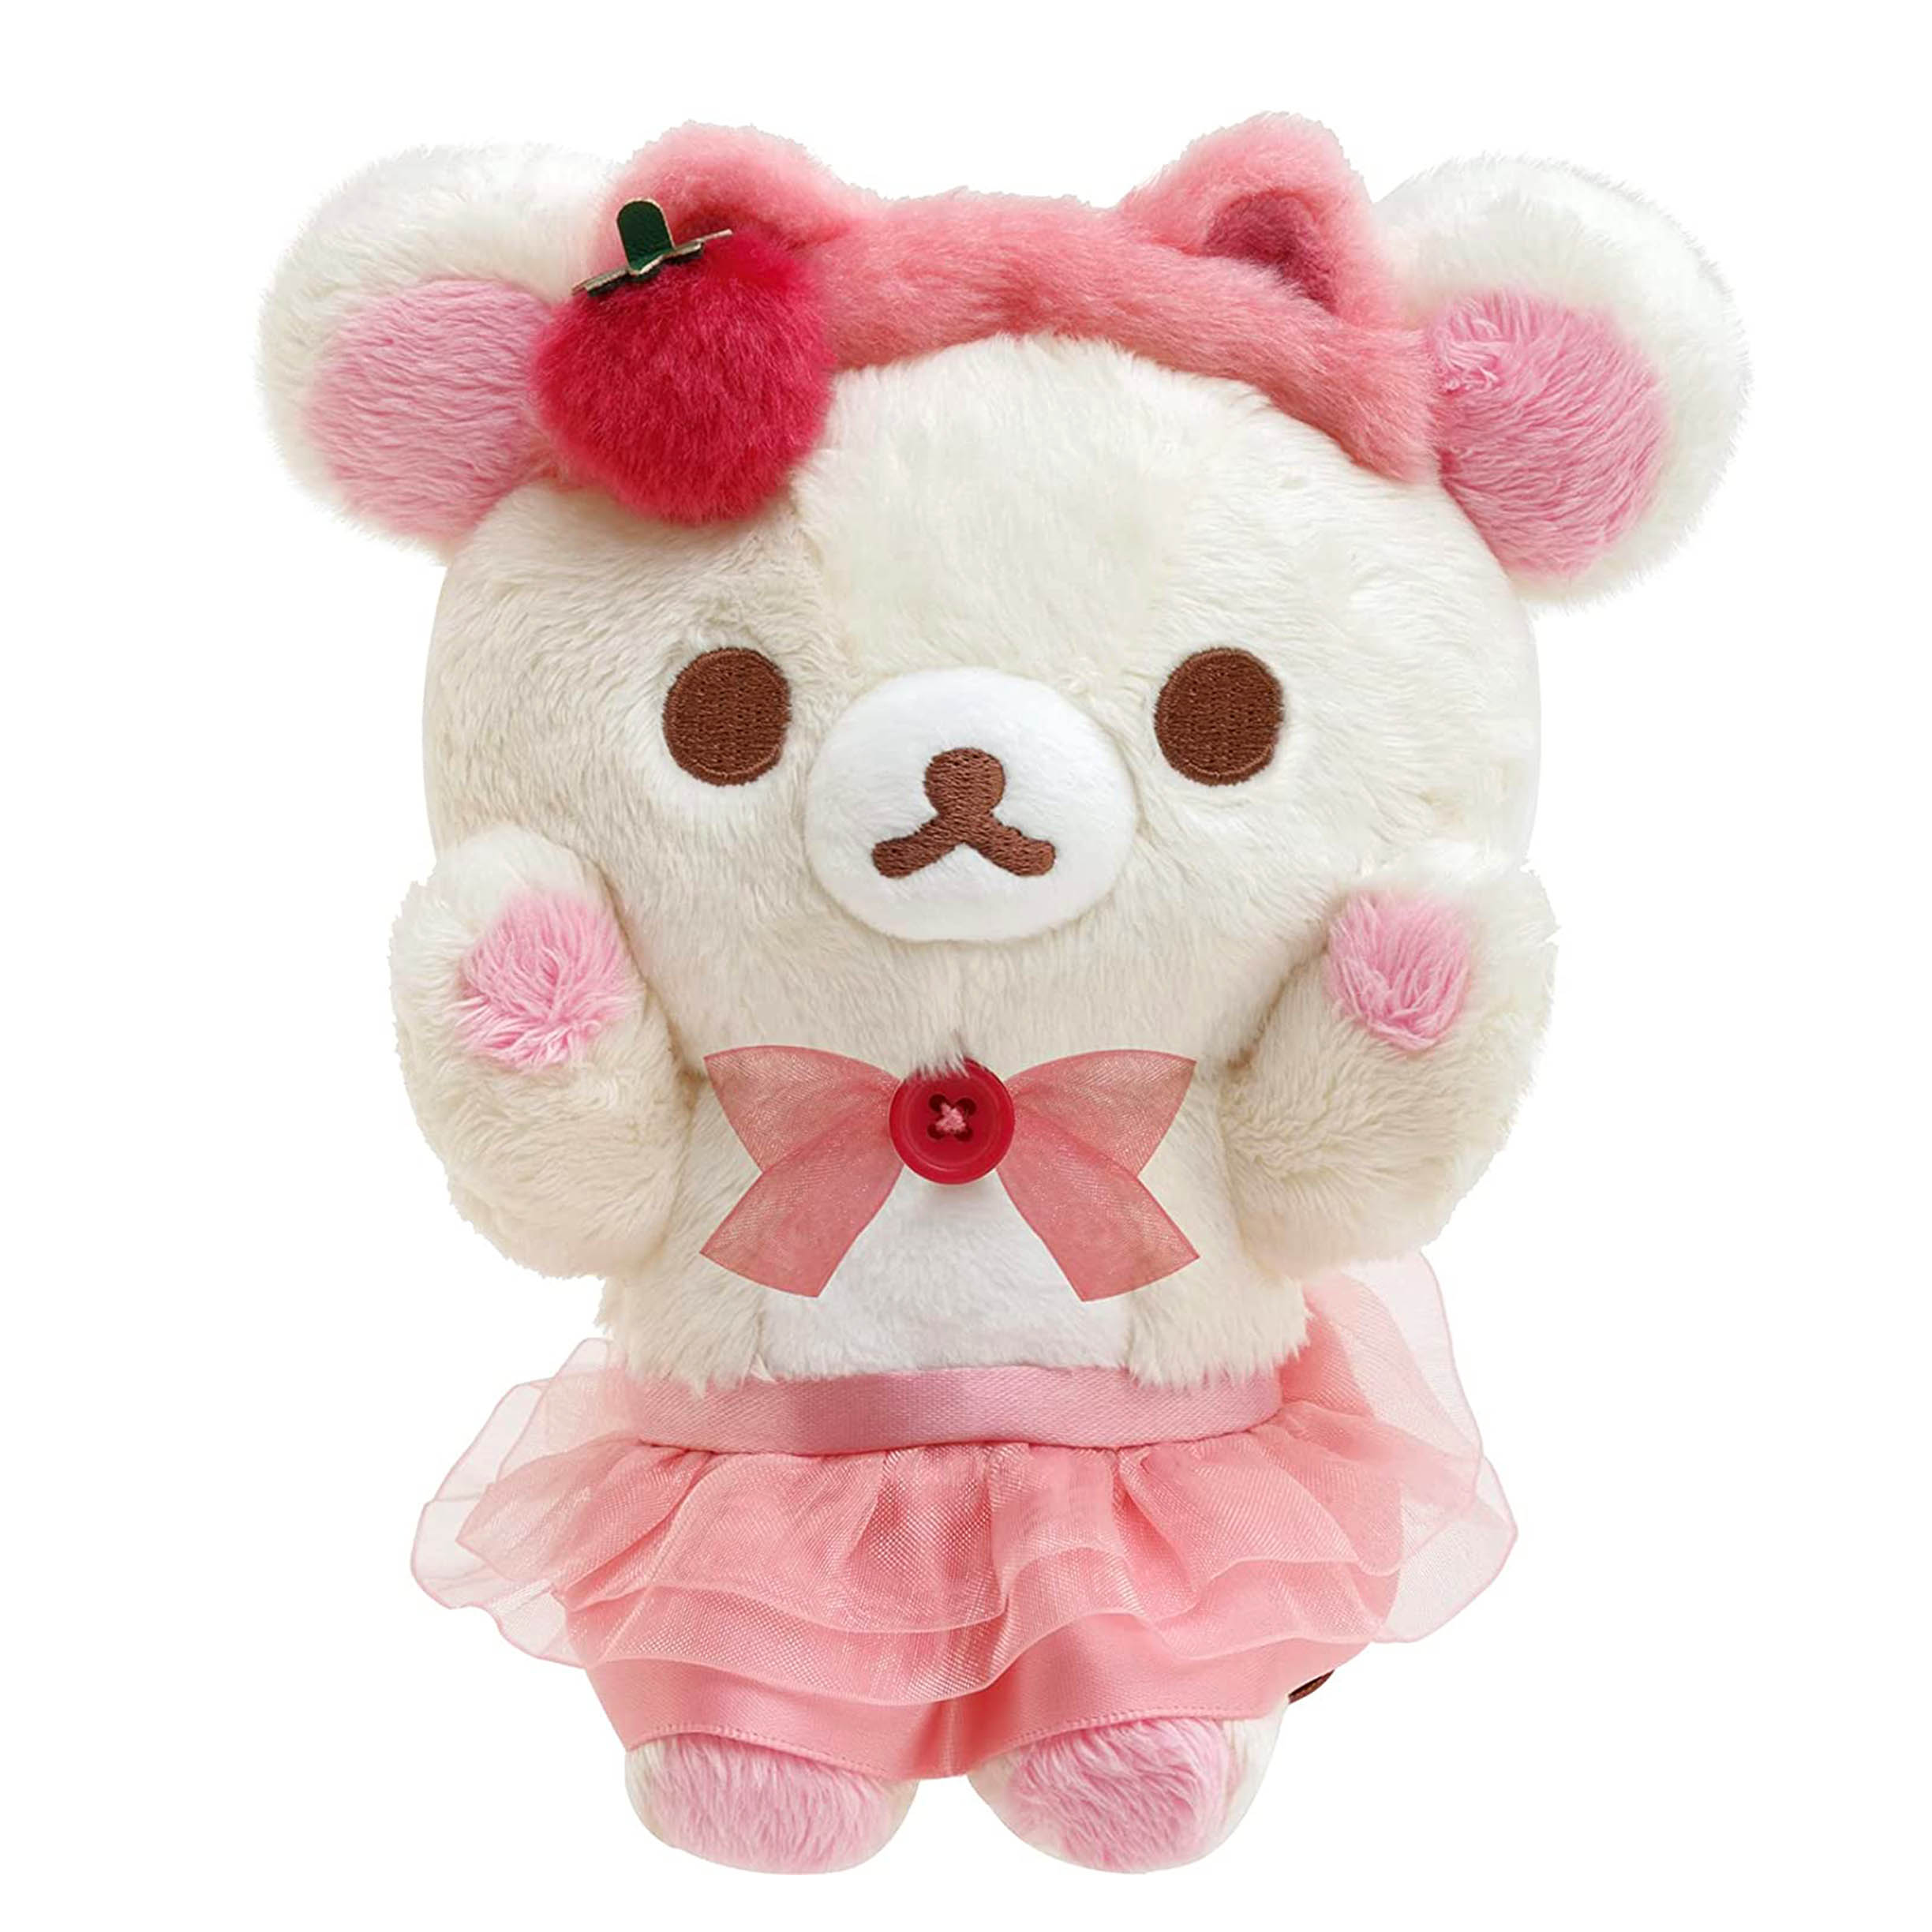 絨毛娃娃拉拉熊 Rilakkuma Korilakkuma To Strawberry Cat SAN-X 日本進口正版授權